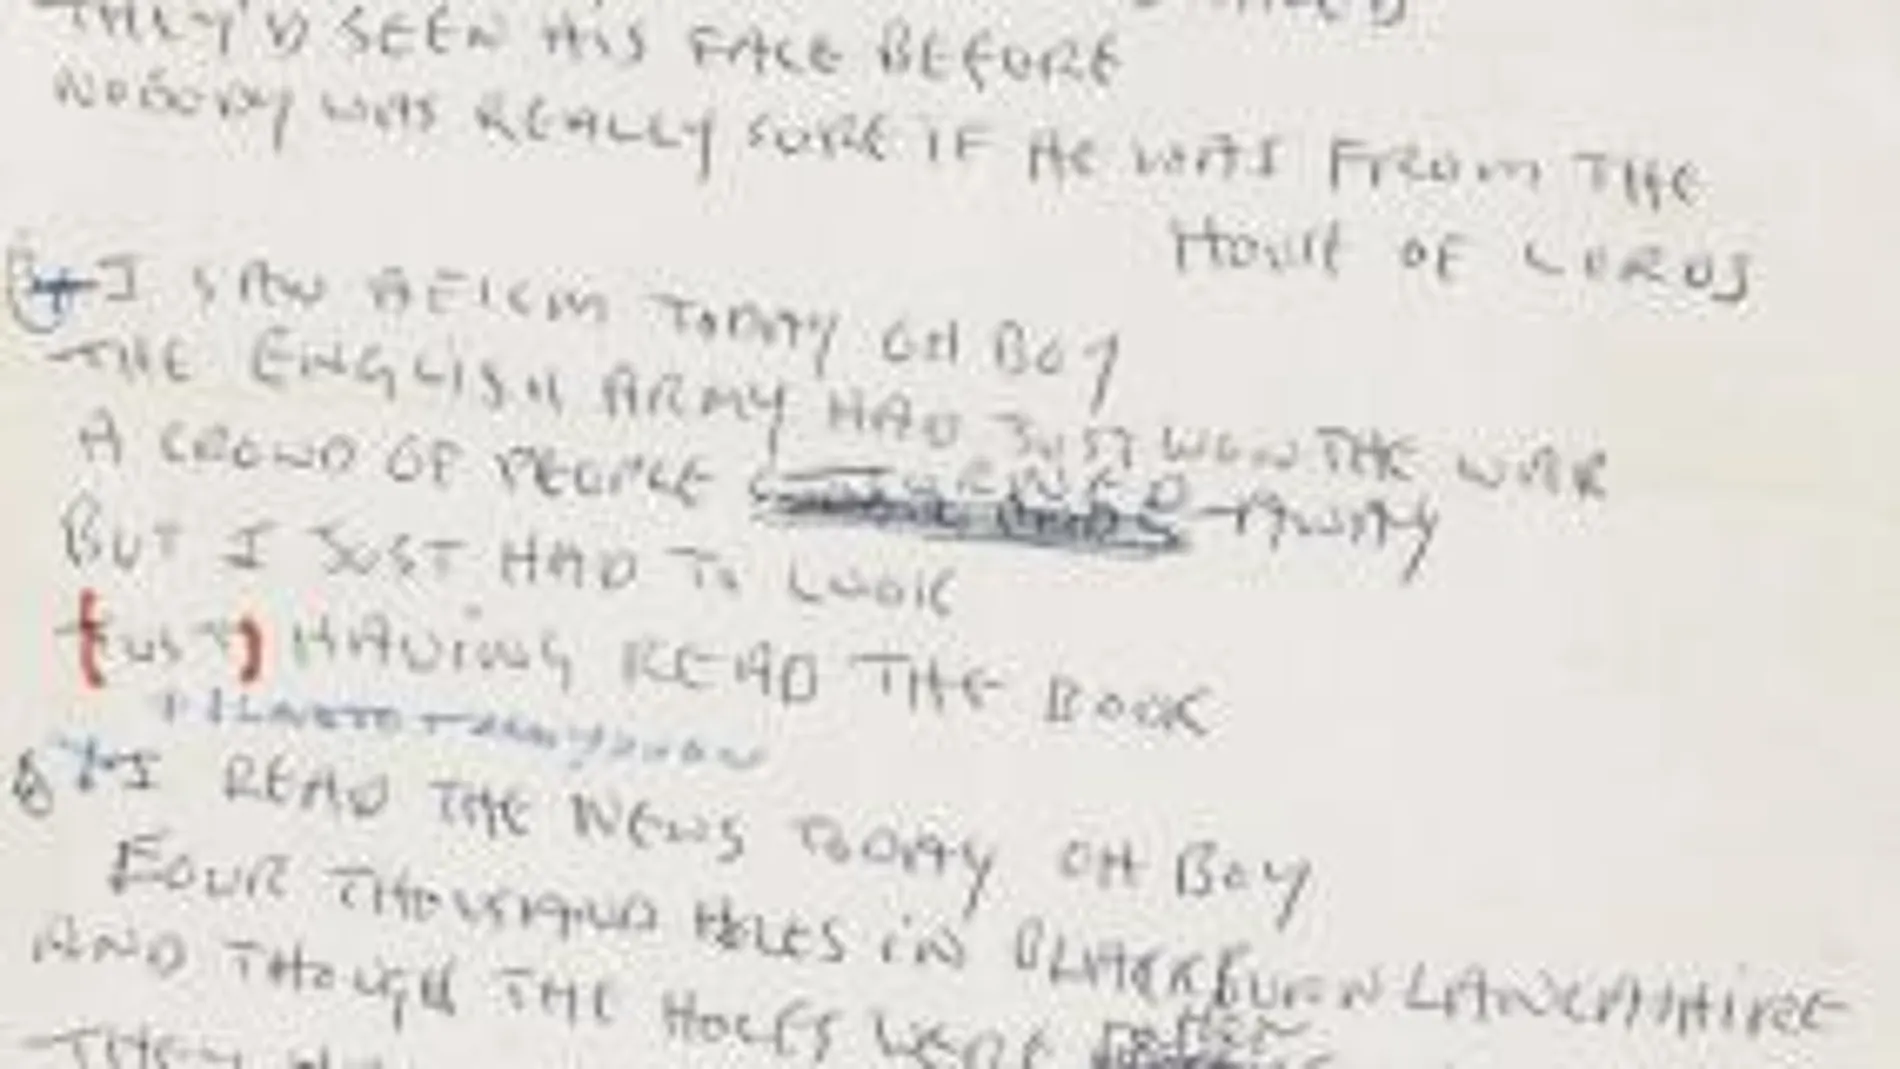 La letra de la canción "A day in the life", escrita por John Lennon